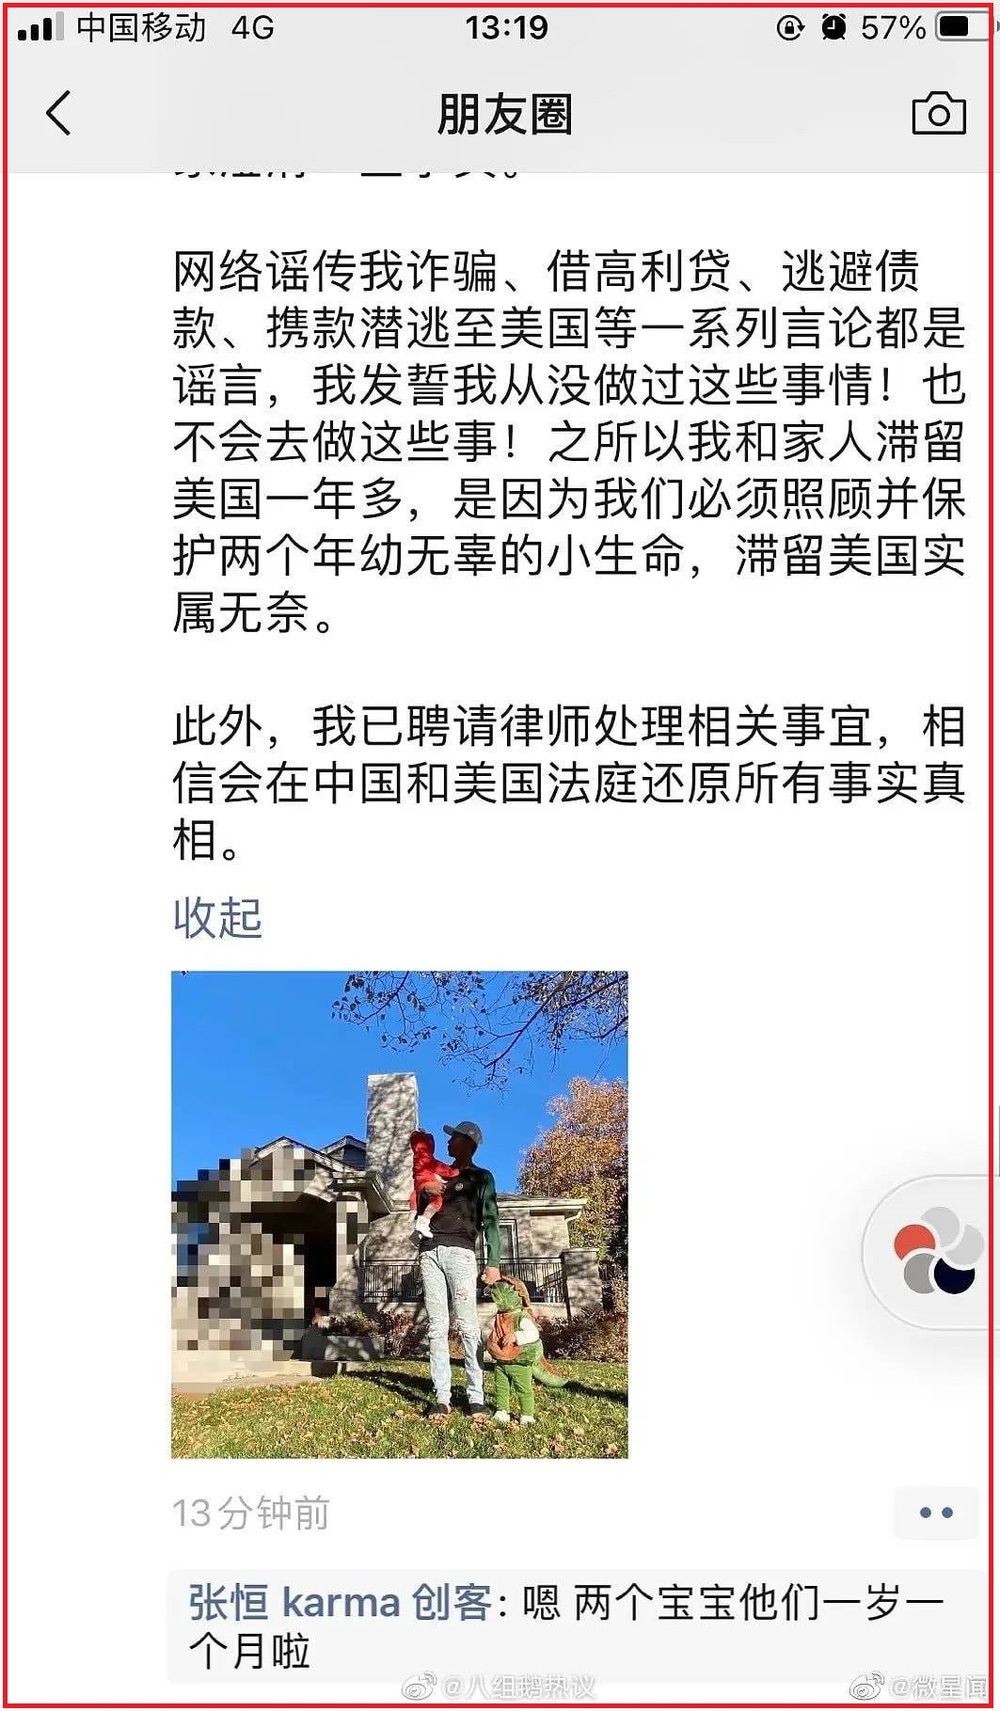  
Bài đăng của Trương Hằng trên mạng xã hội - Ảnh Weibo